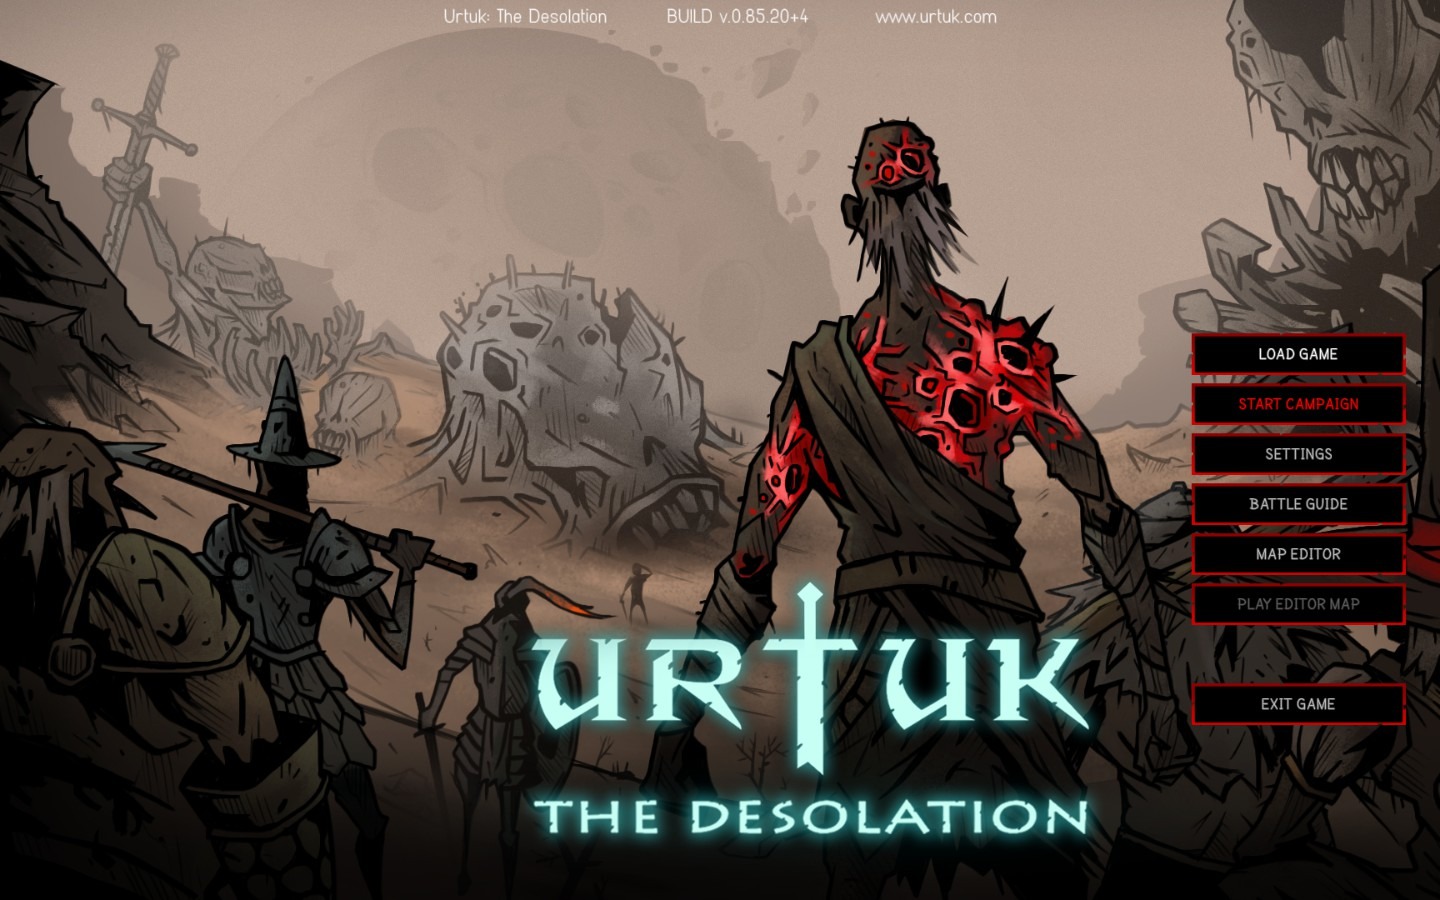 苦痛と絶望のダークファンタジー オープンワールドsrpg Urtuk The Desolation デジボで遊ぼ Game Spark 国内 海外ゲーム情報サイト